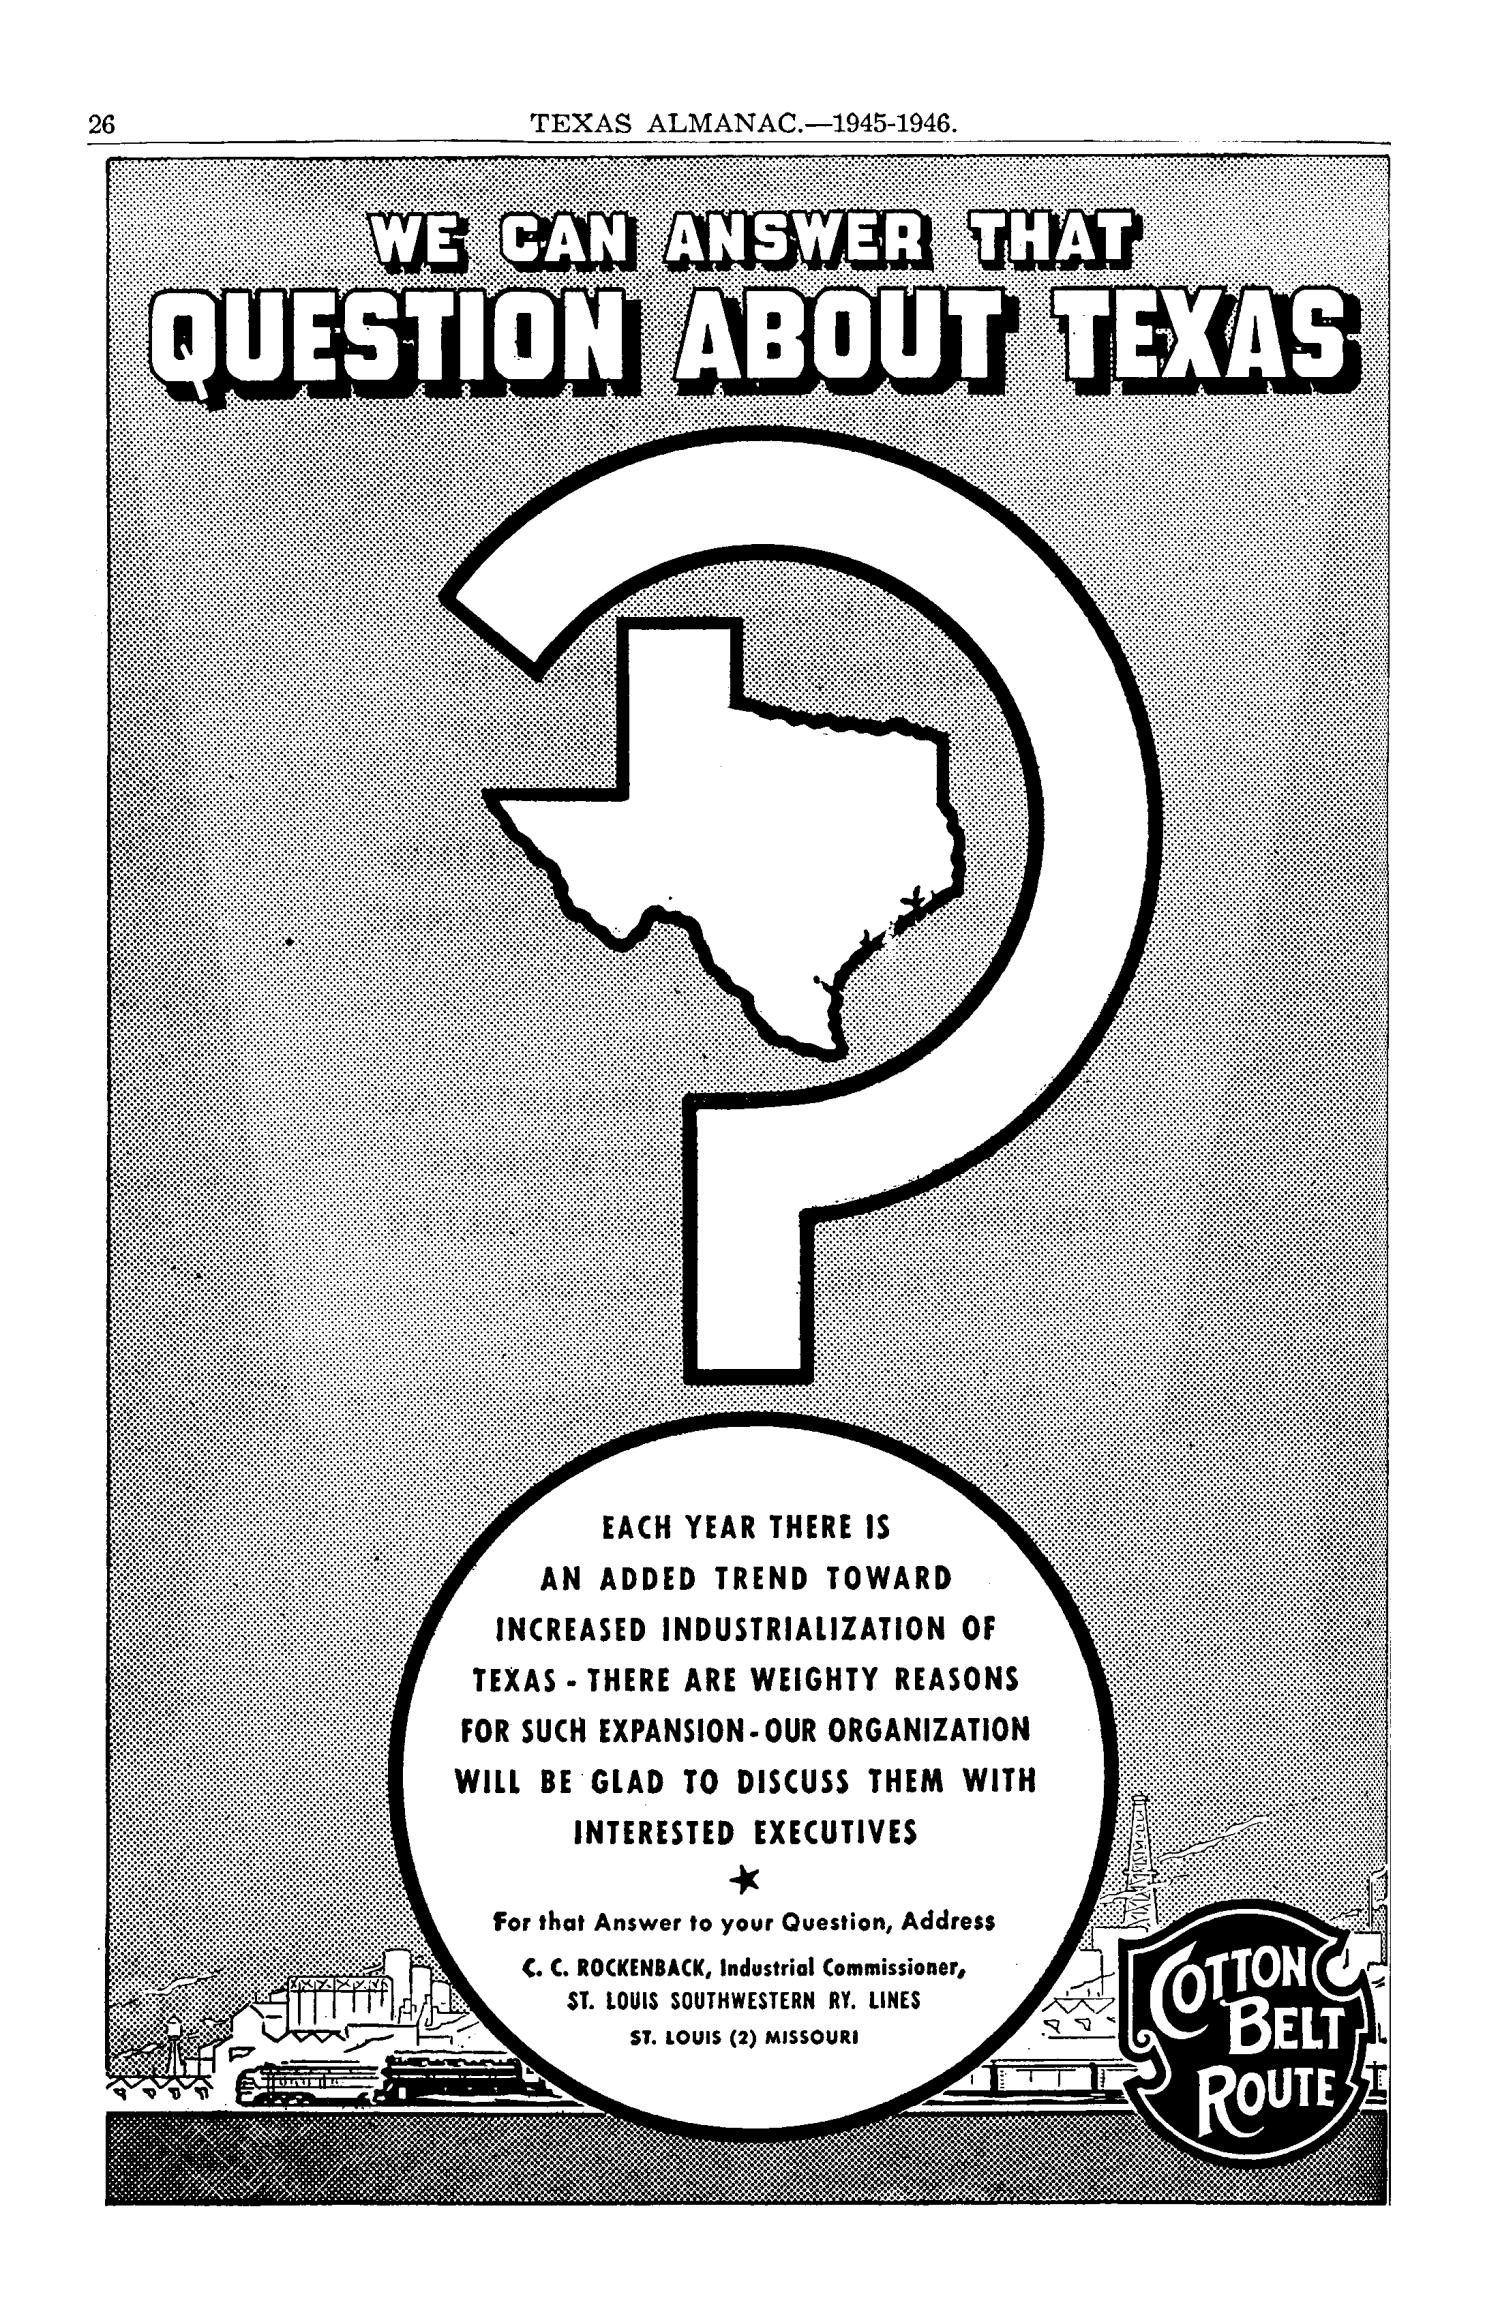 Texas Almanac, 1945-1946
                                                
                                                    26
                                                